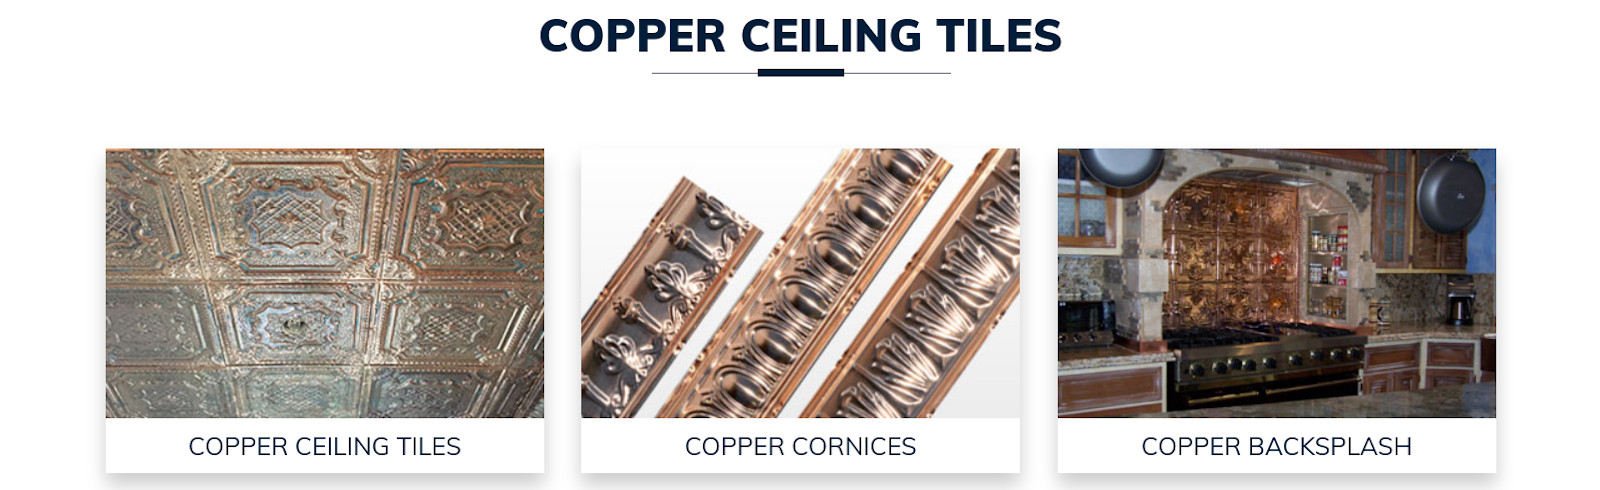 copper ceiling tiles discounts